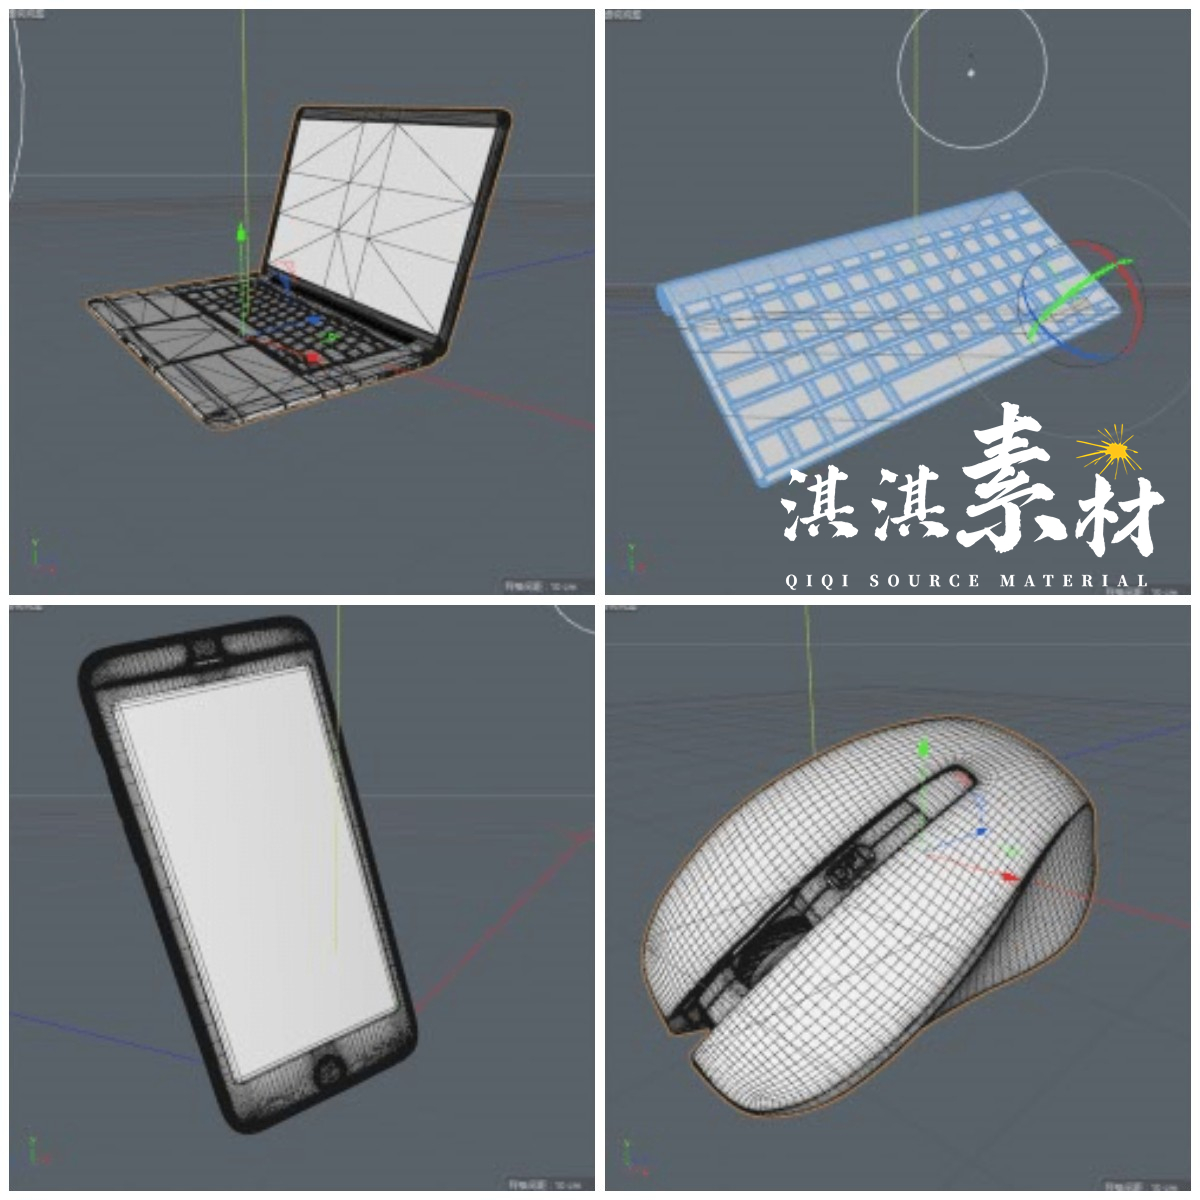 3D元宇宙金属酸性质感通讯电子设备电脑摄像鼠标键盘C4D模型素材